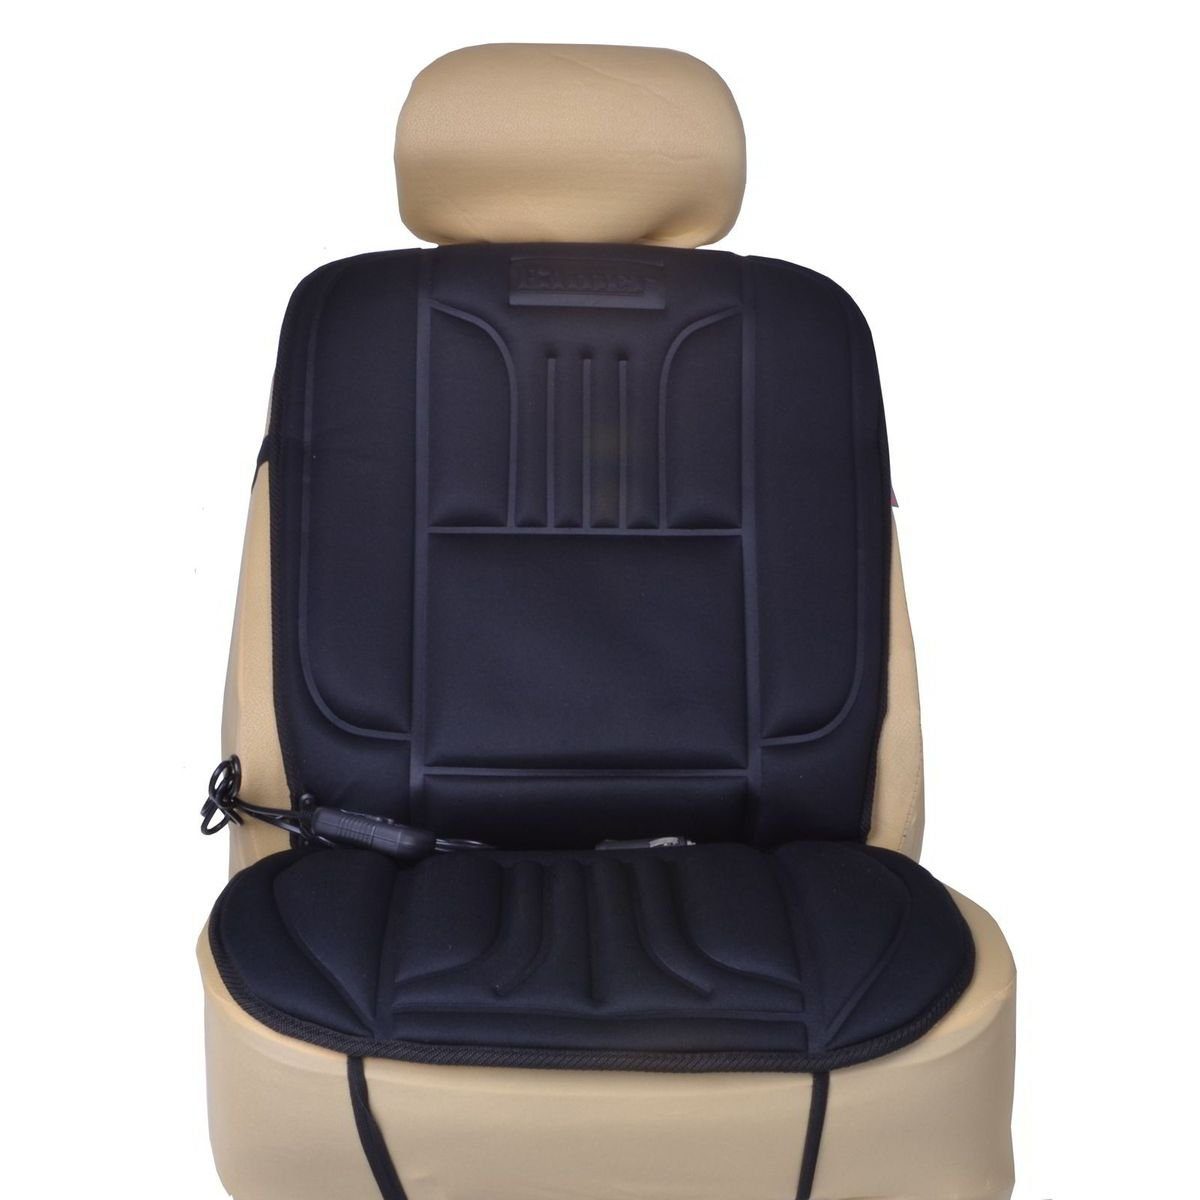 Massagesitzauflage Rücken Shiatsu Massagematte Sitzauflage für Büro Auto 12v